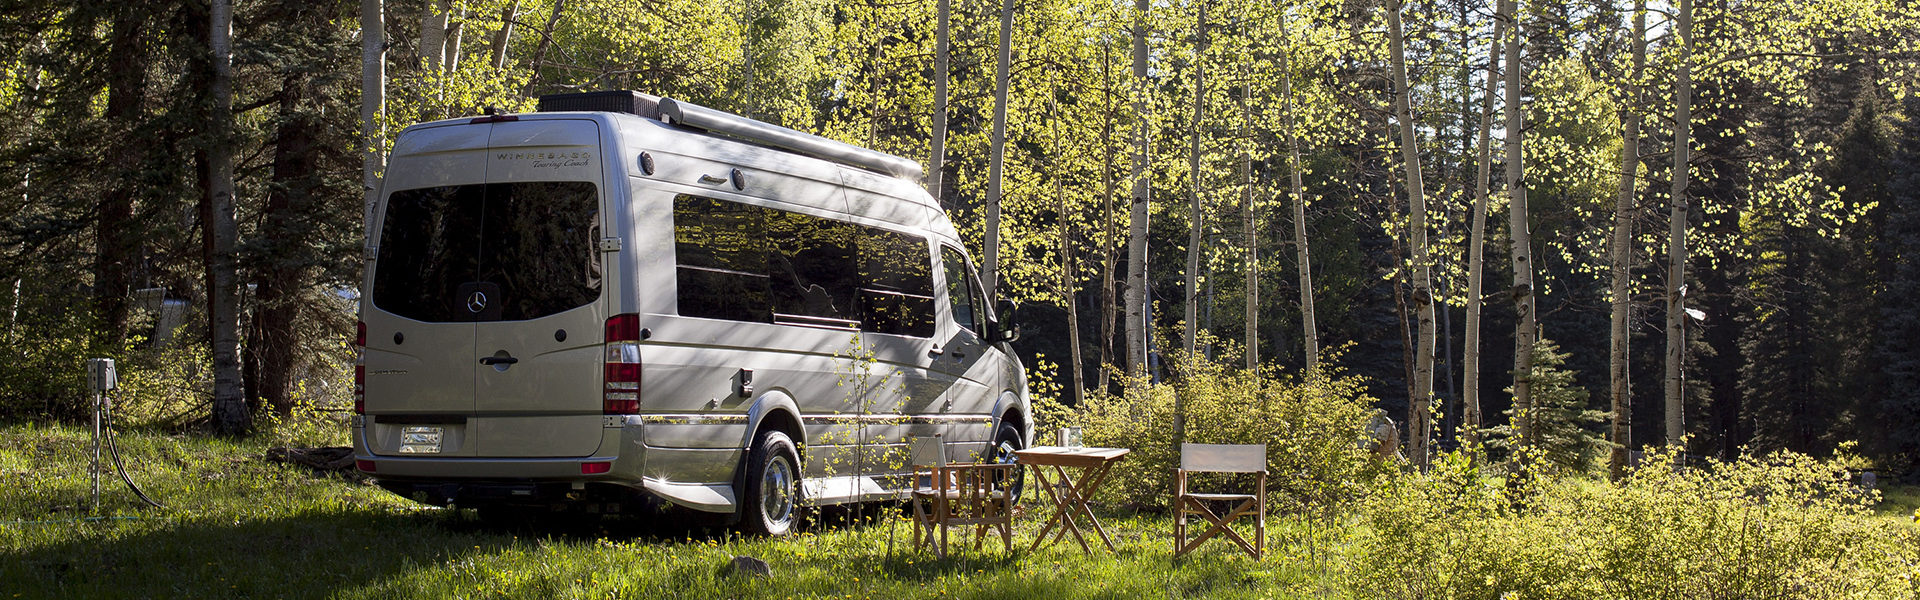 Mercedes-Benz Vans Camp in Dunton, Colorado